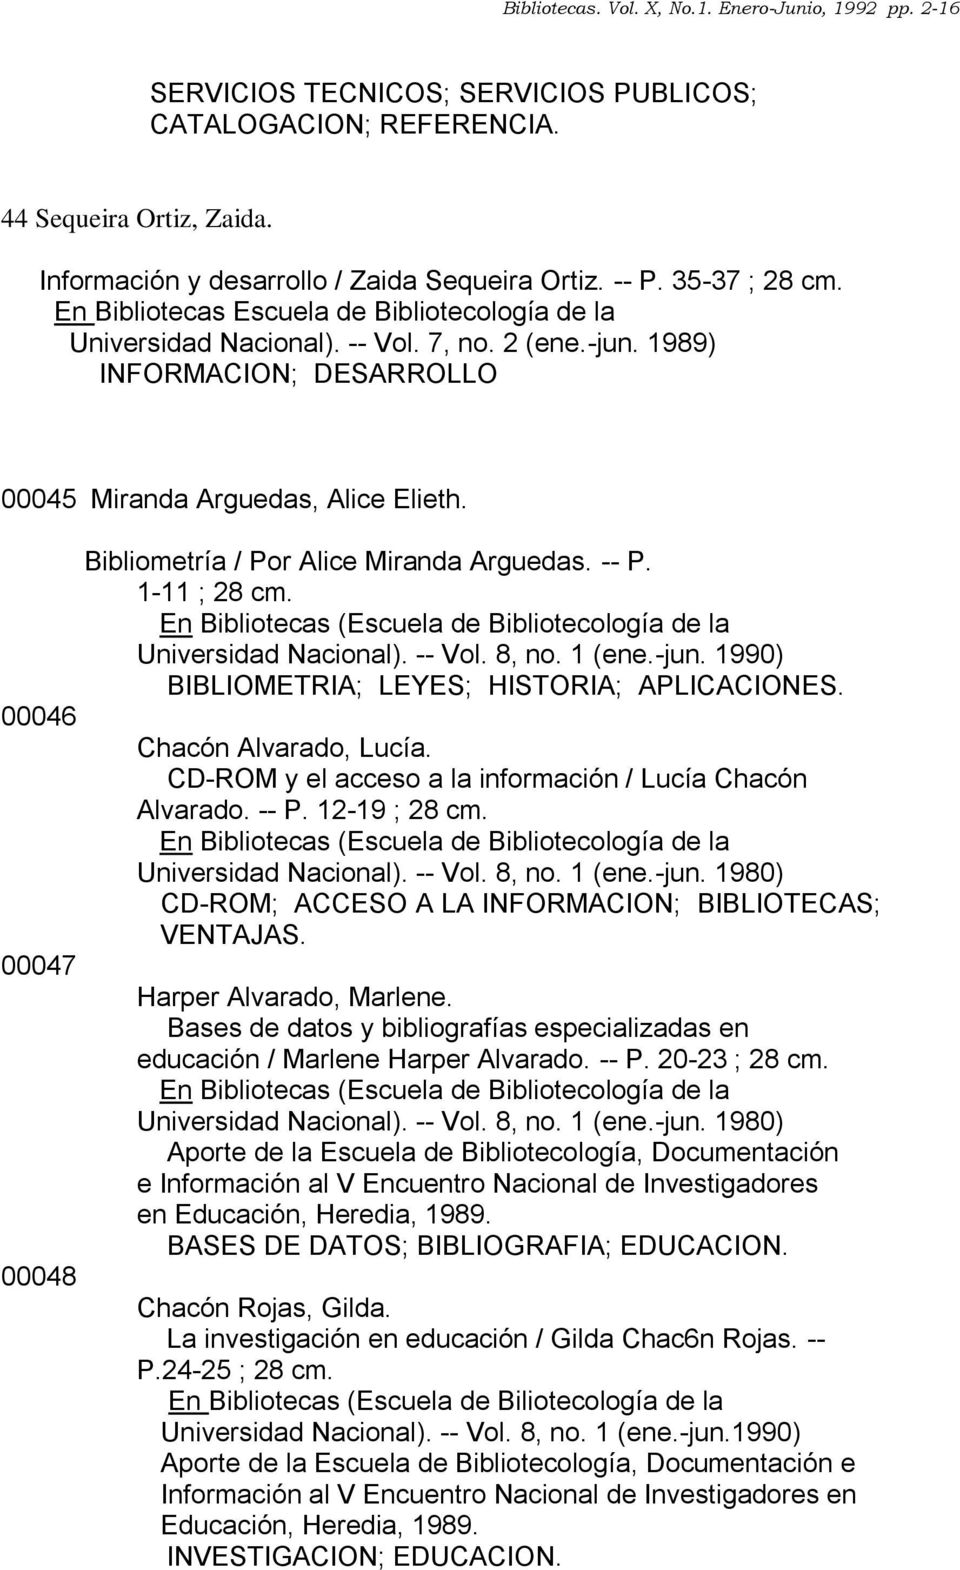 00046 00047 00048 Bibliometría / Por Alice Miranda Arguedas. -- P. 1-11 ; 28 cm. Universidad Nacional). -- Vol. 8, no. 1 (ene.-jun. 1990) BIBLIOMETRIA; LEYES; HISTORIA; APLICACIONES.